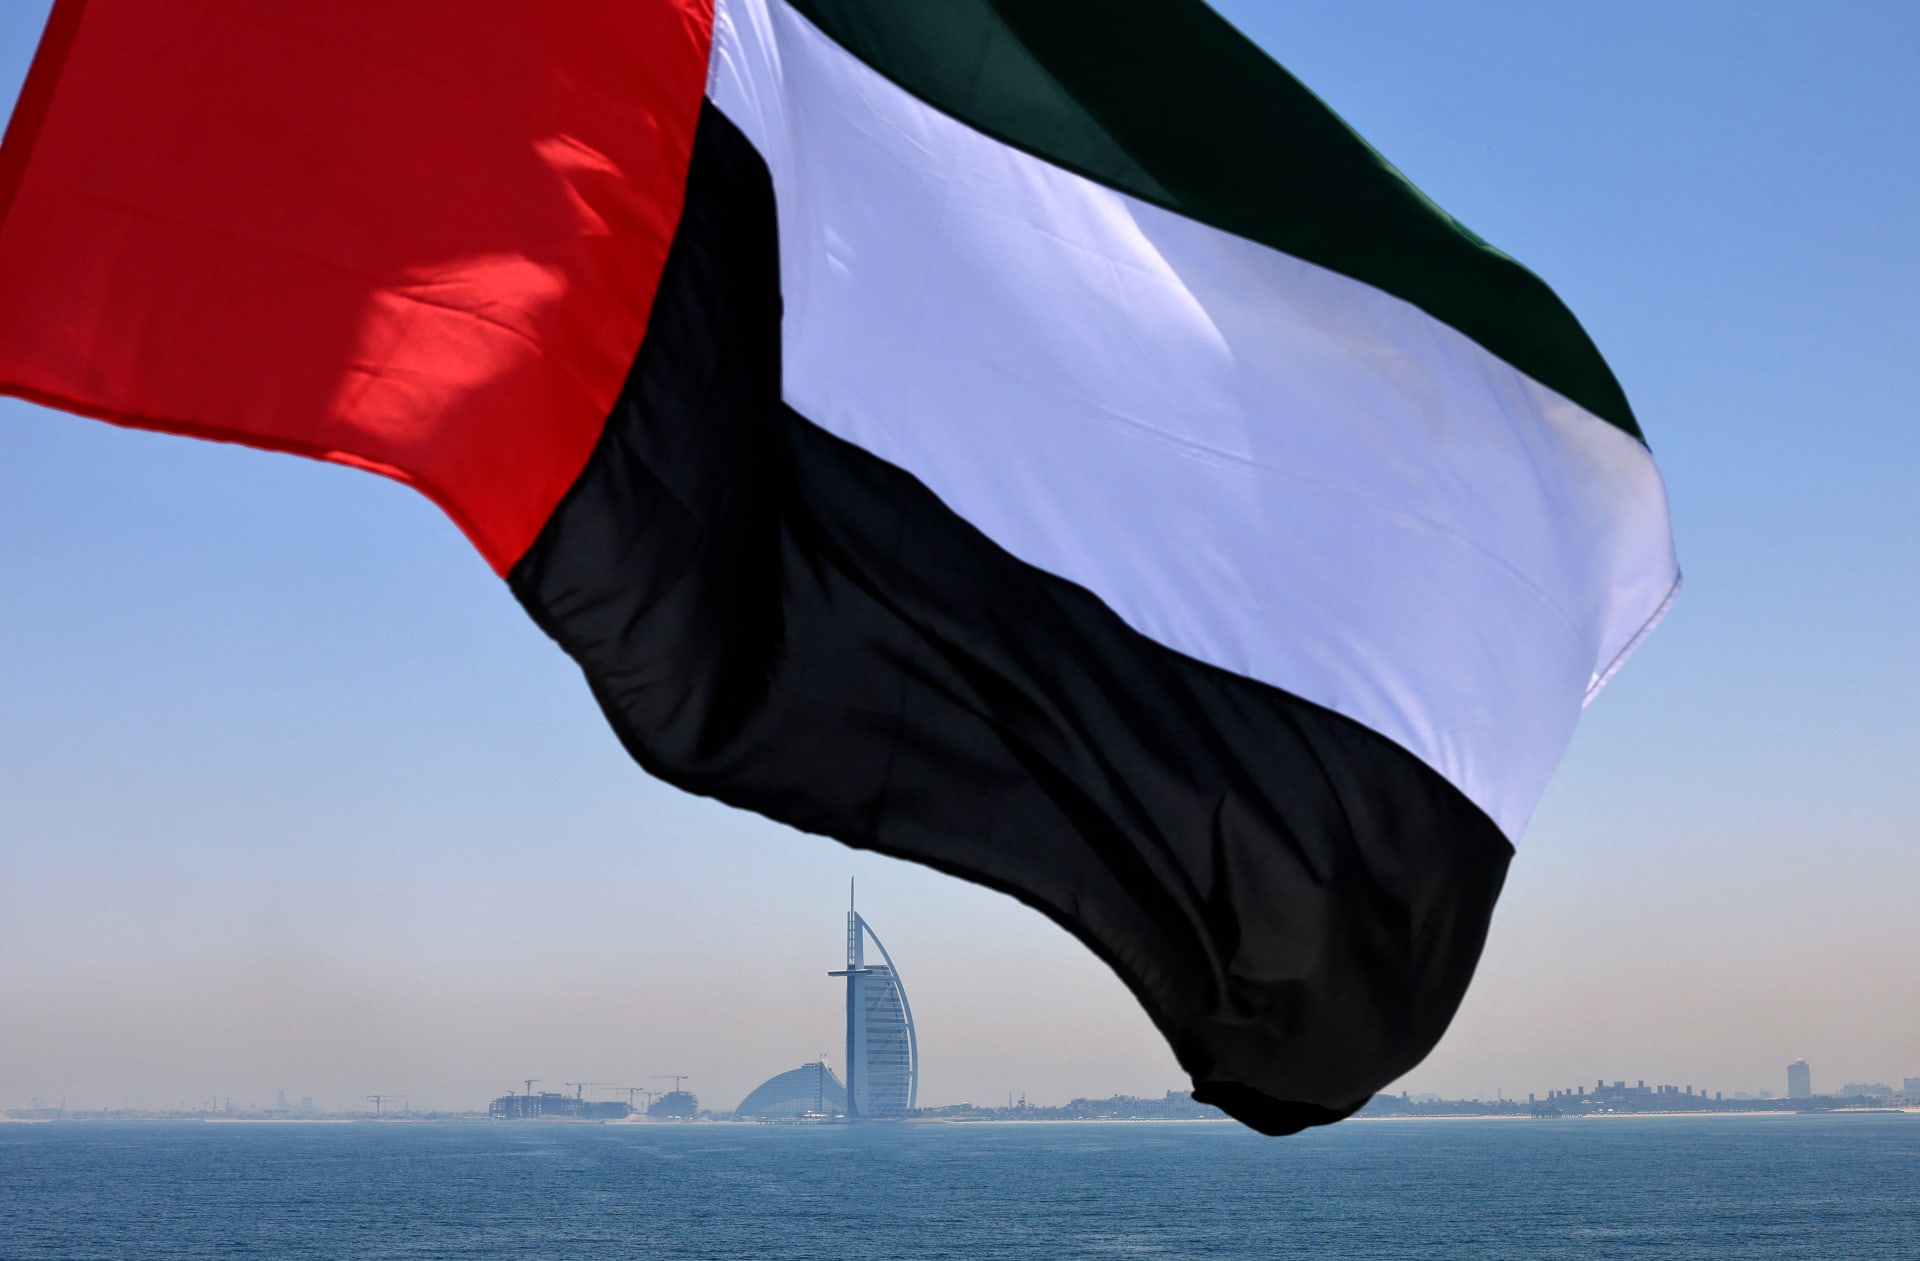 علم الإمارات يرفرف فوق مرسى دبي مع فندق برج العرب في الخلفية - 3 يونيو/ حزيران 2021